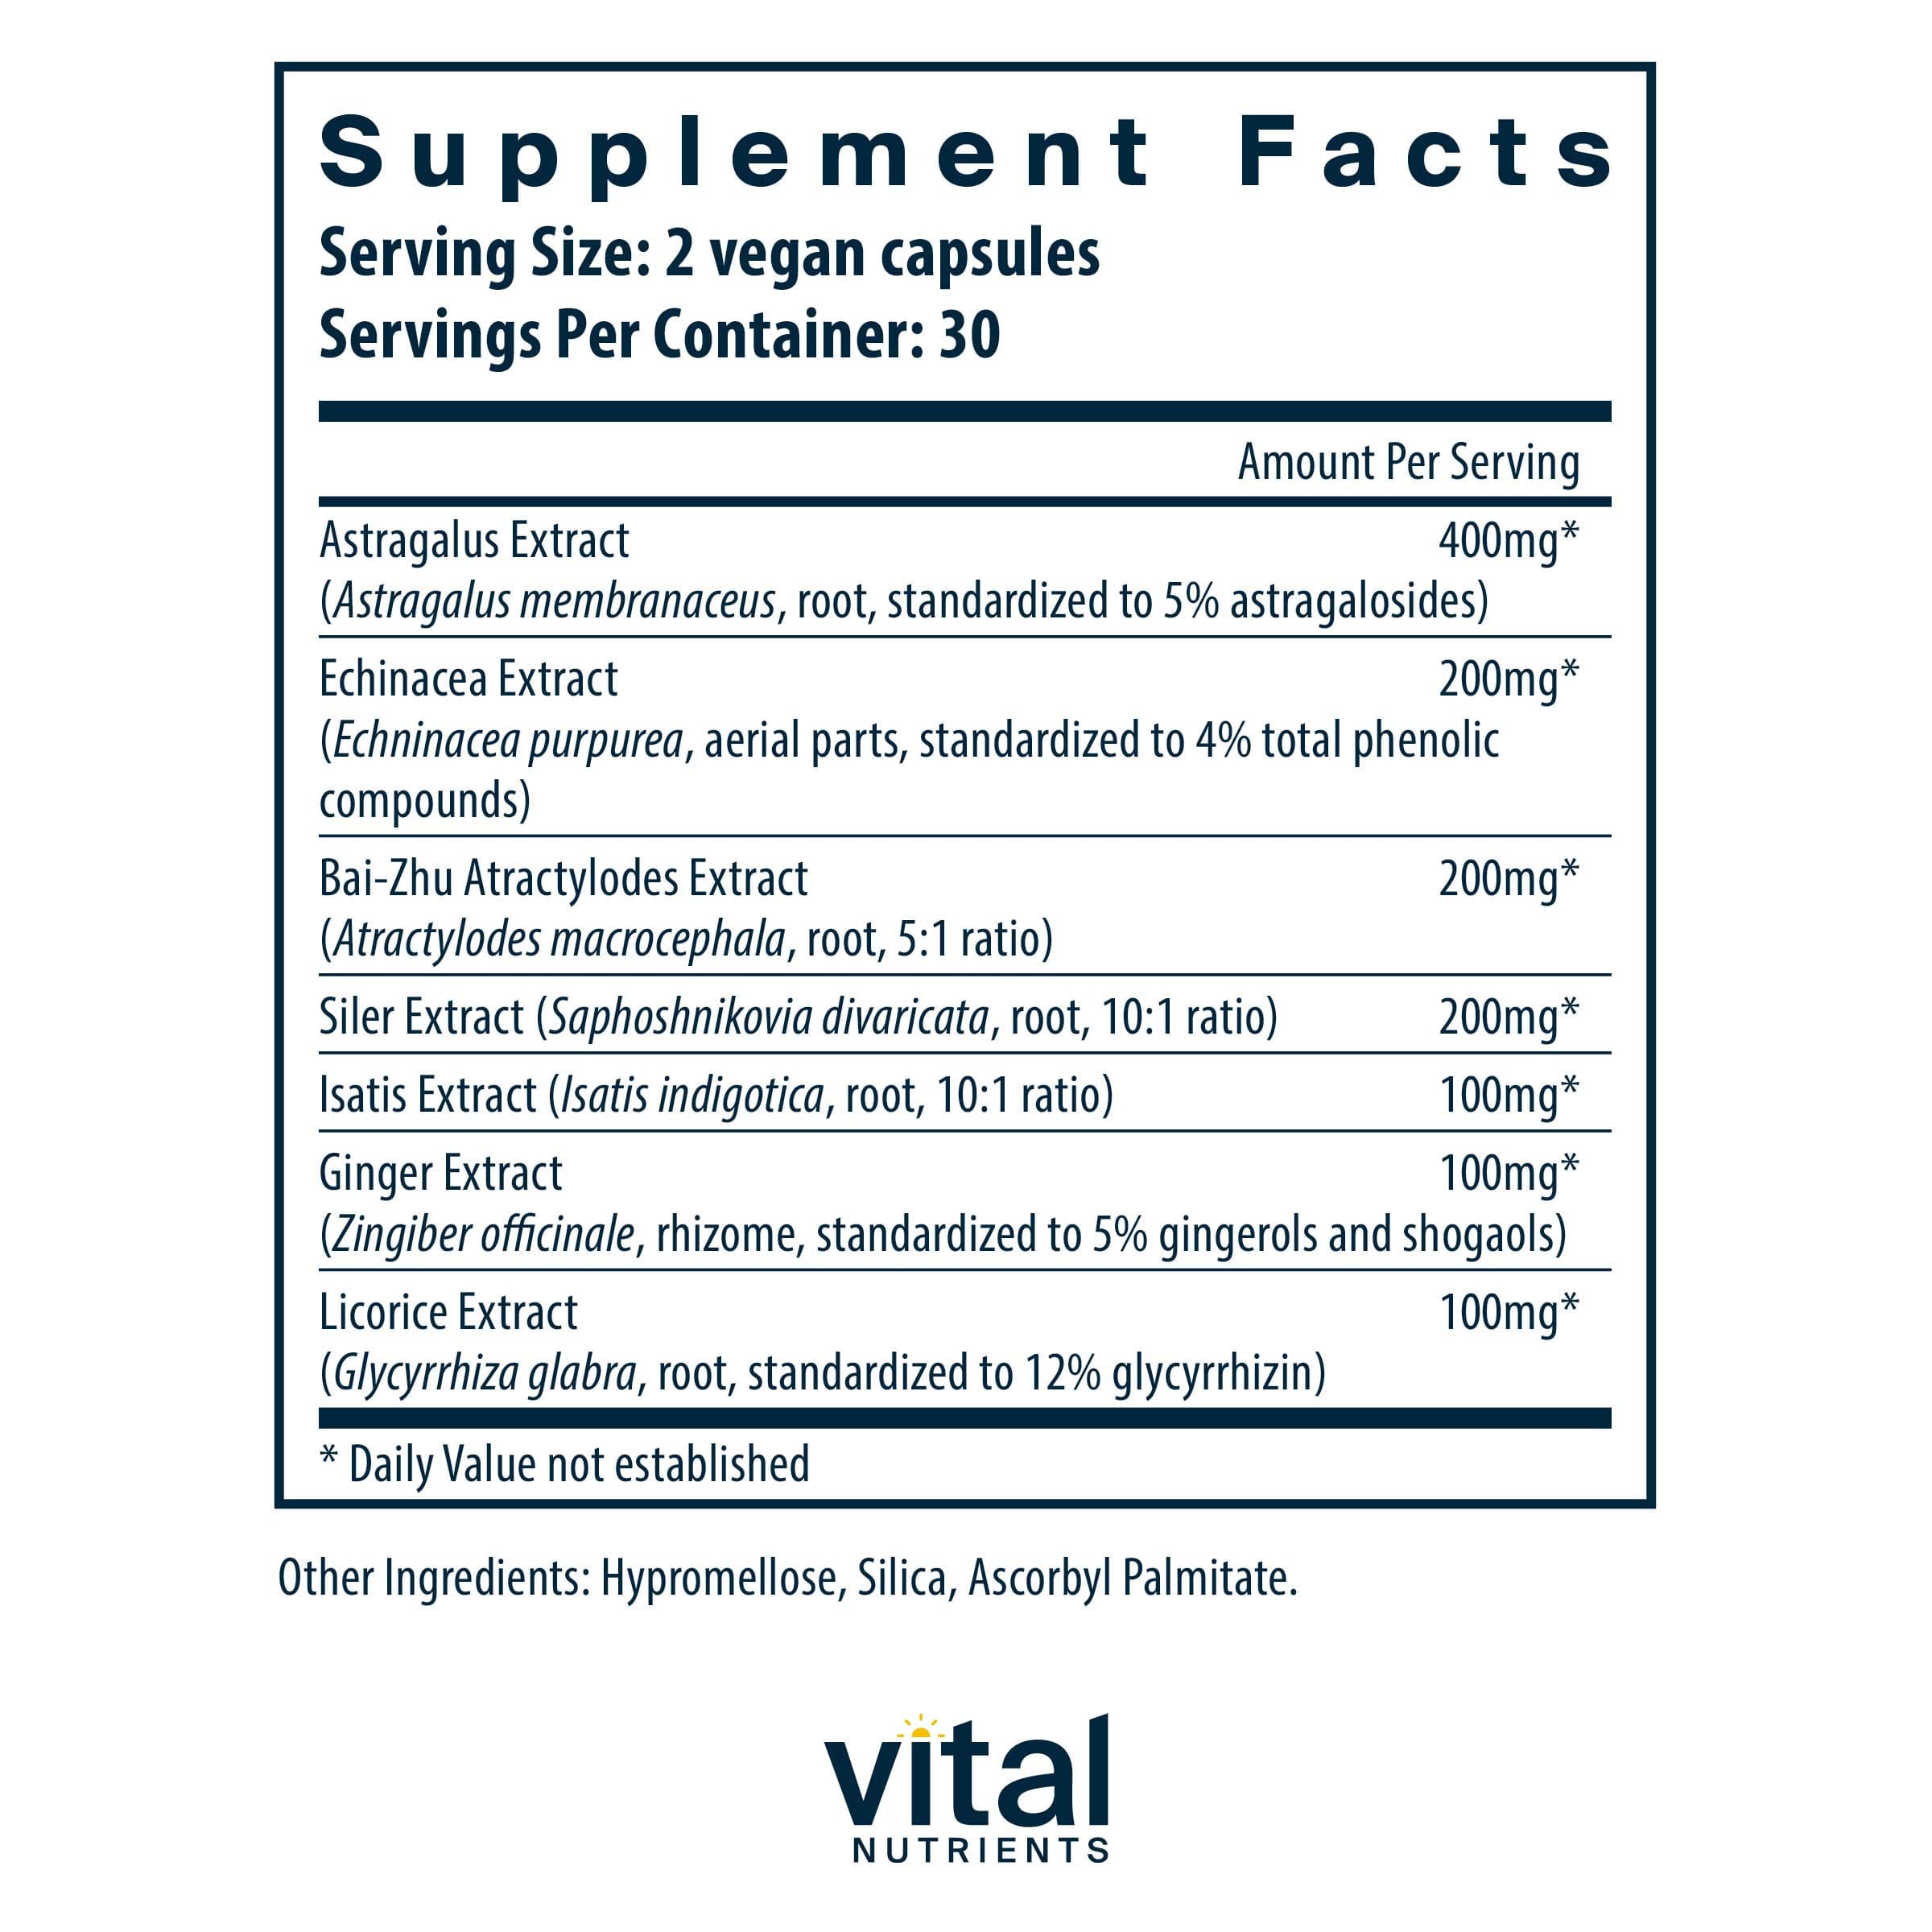 Vital Nutrients Immune Support Ingredients